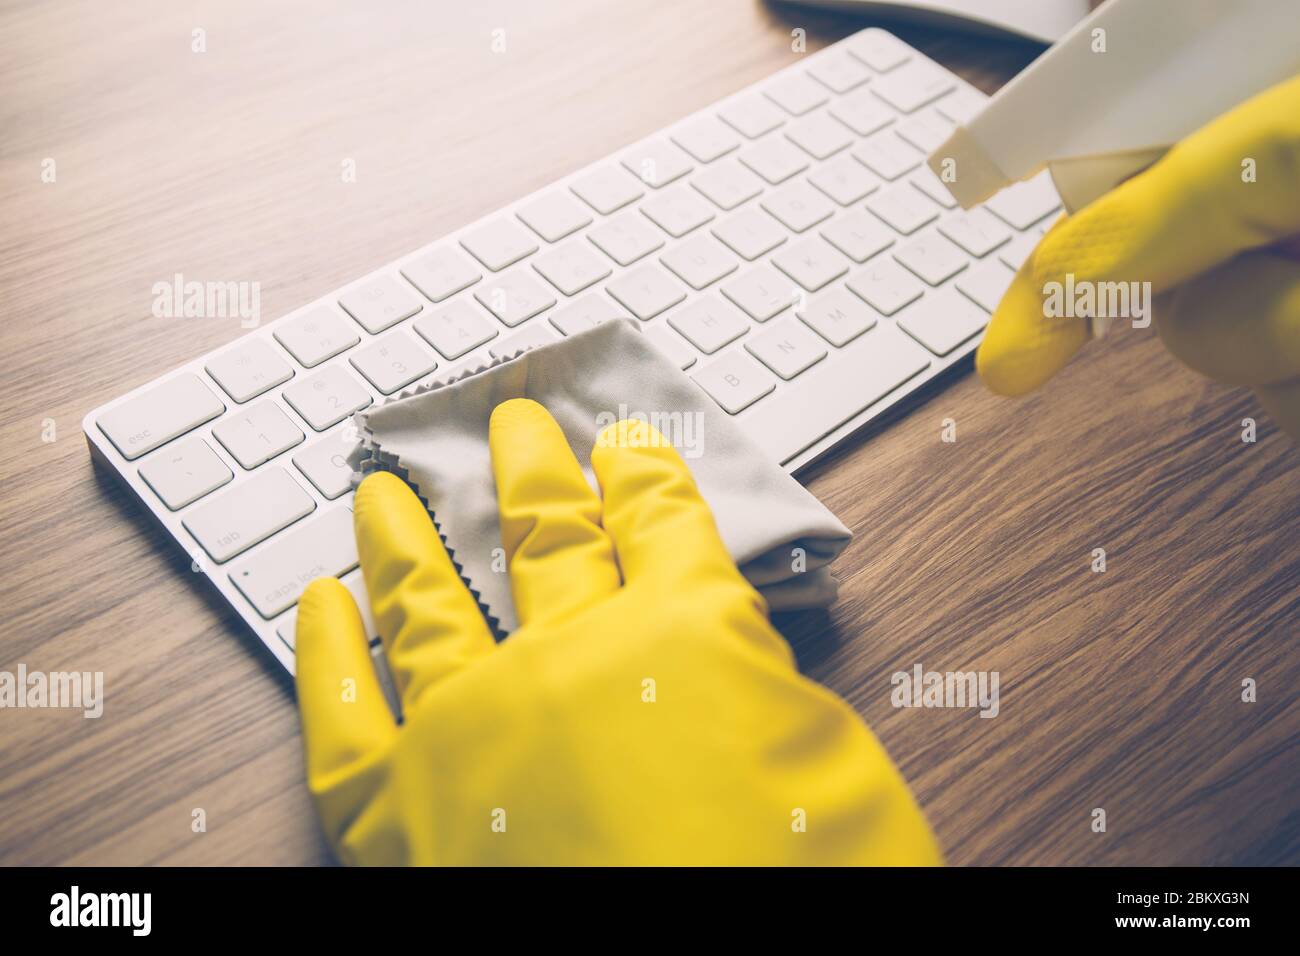 Main de l'homme nettoyage clavier ordinateur avec antibactérien pour  protéger la maladie épidémique covid-19, tissu ayant l'alcool antiseptique  nettoyer et laver lapto Photo Stock - Alamy